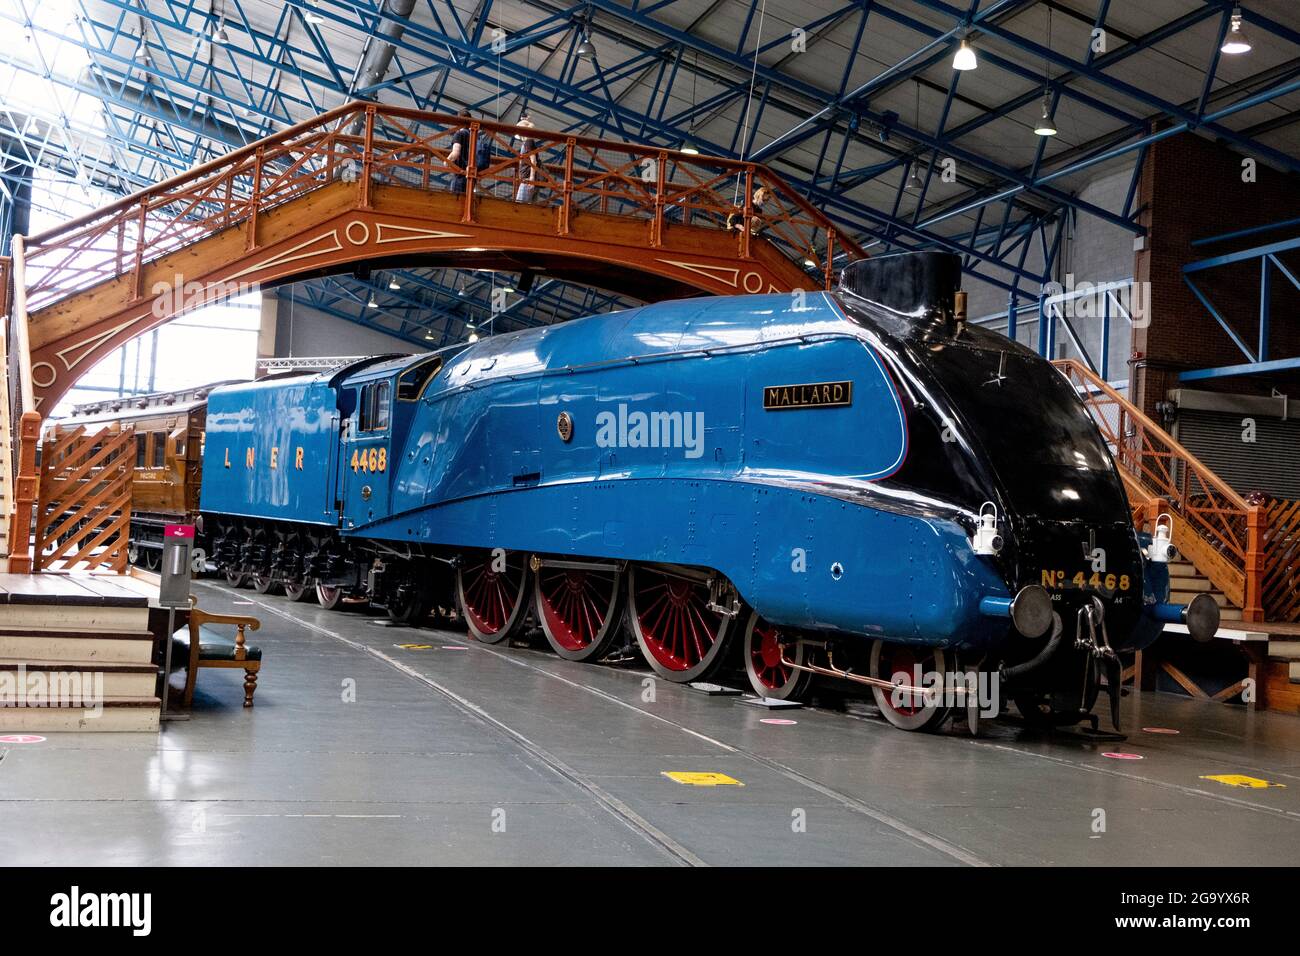 Dampflokomotive Mallard Inhaber der schnellsten Dampflokomotive der Welt,  die im National Railway Museum, York, untergebracht ist Stockfotografie -  Alamy